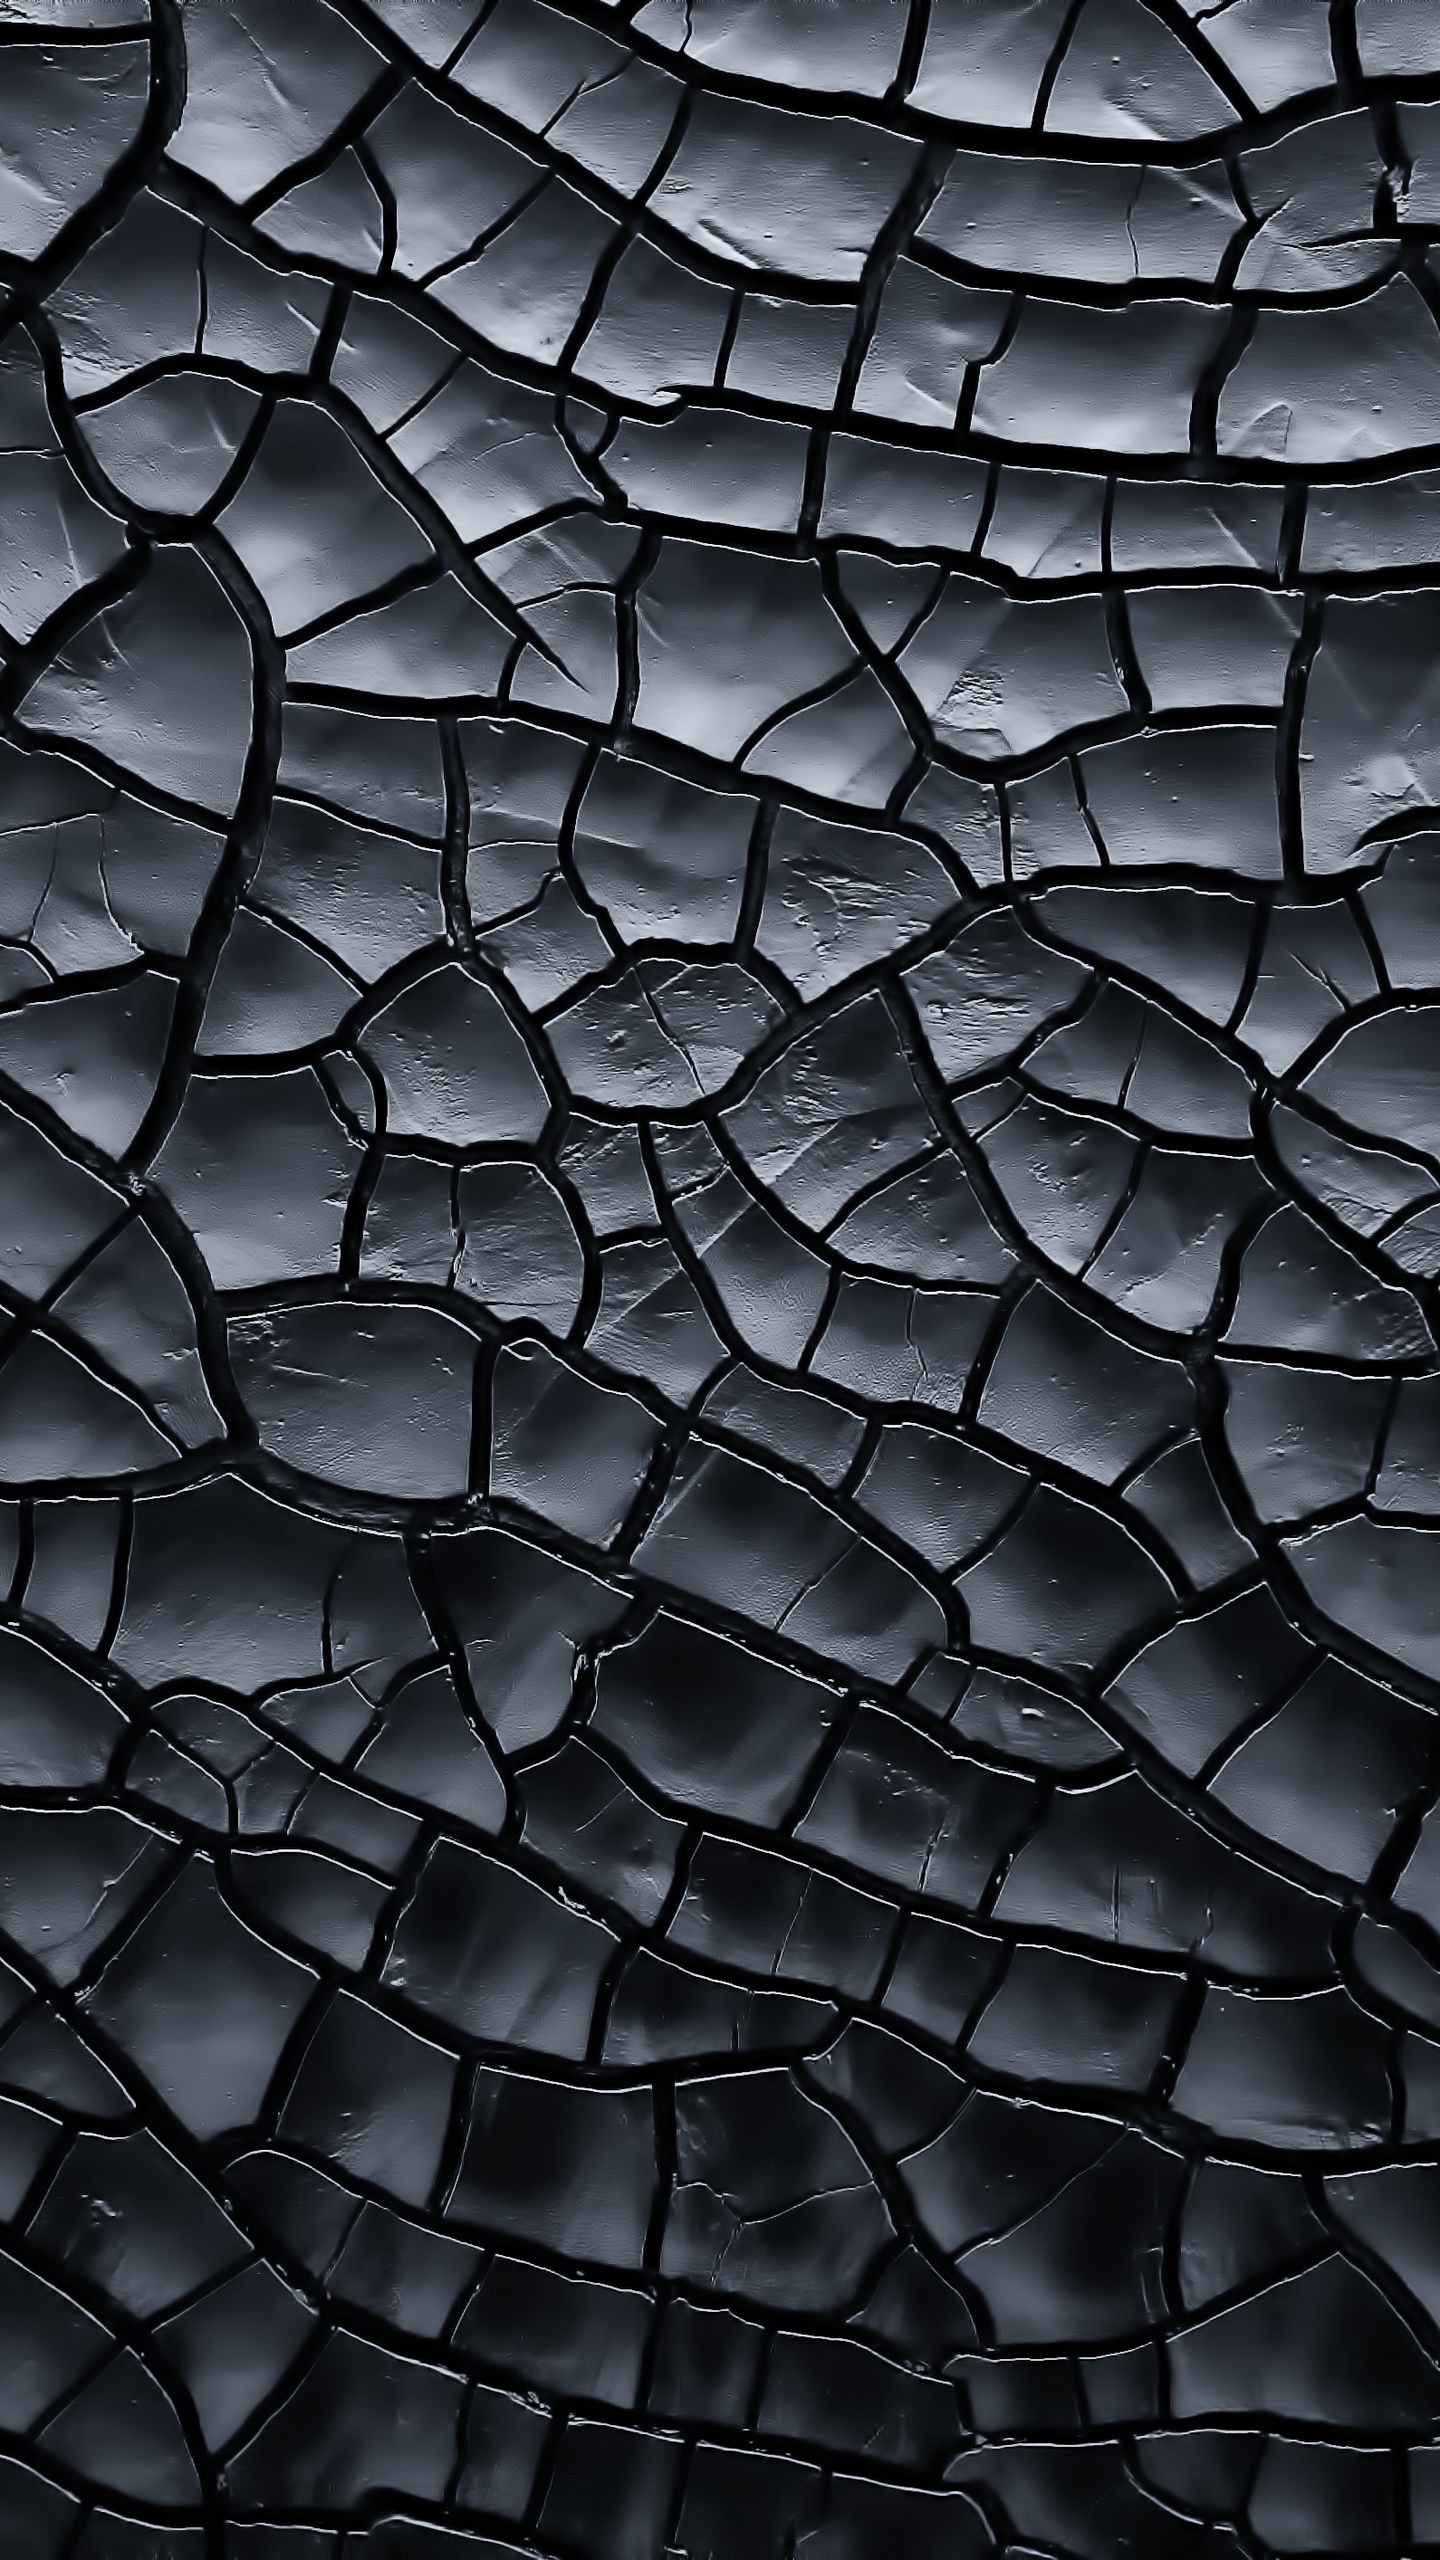 Download wallpaper 1440x2560 texture, crack, black qhd samsung